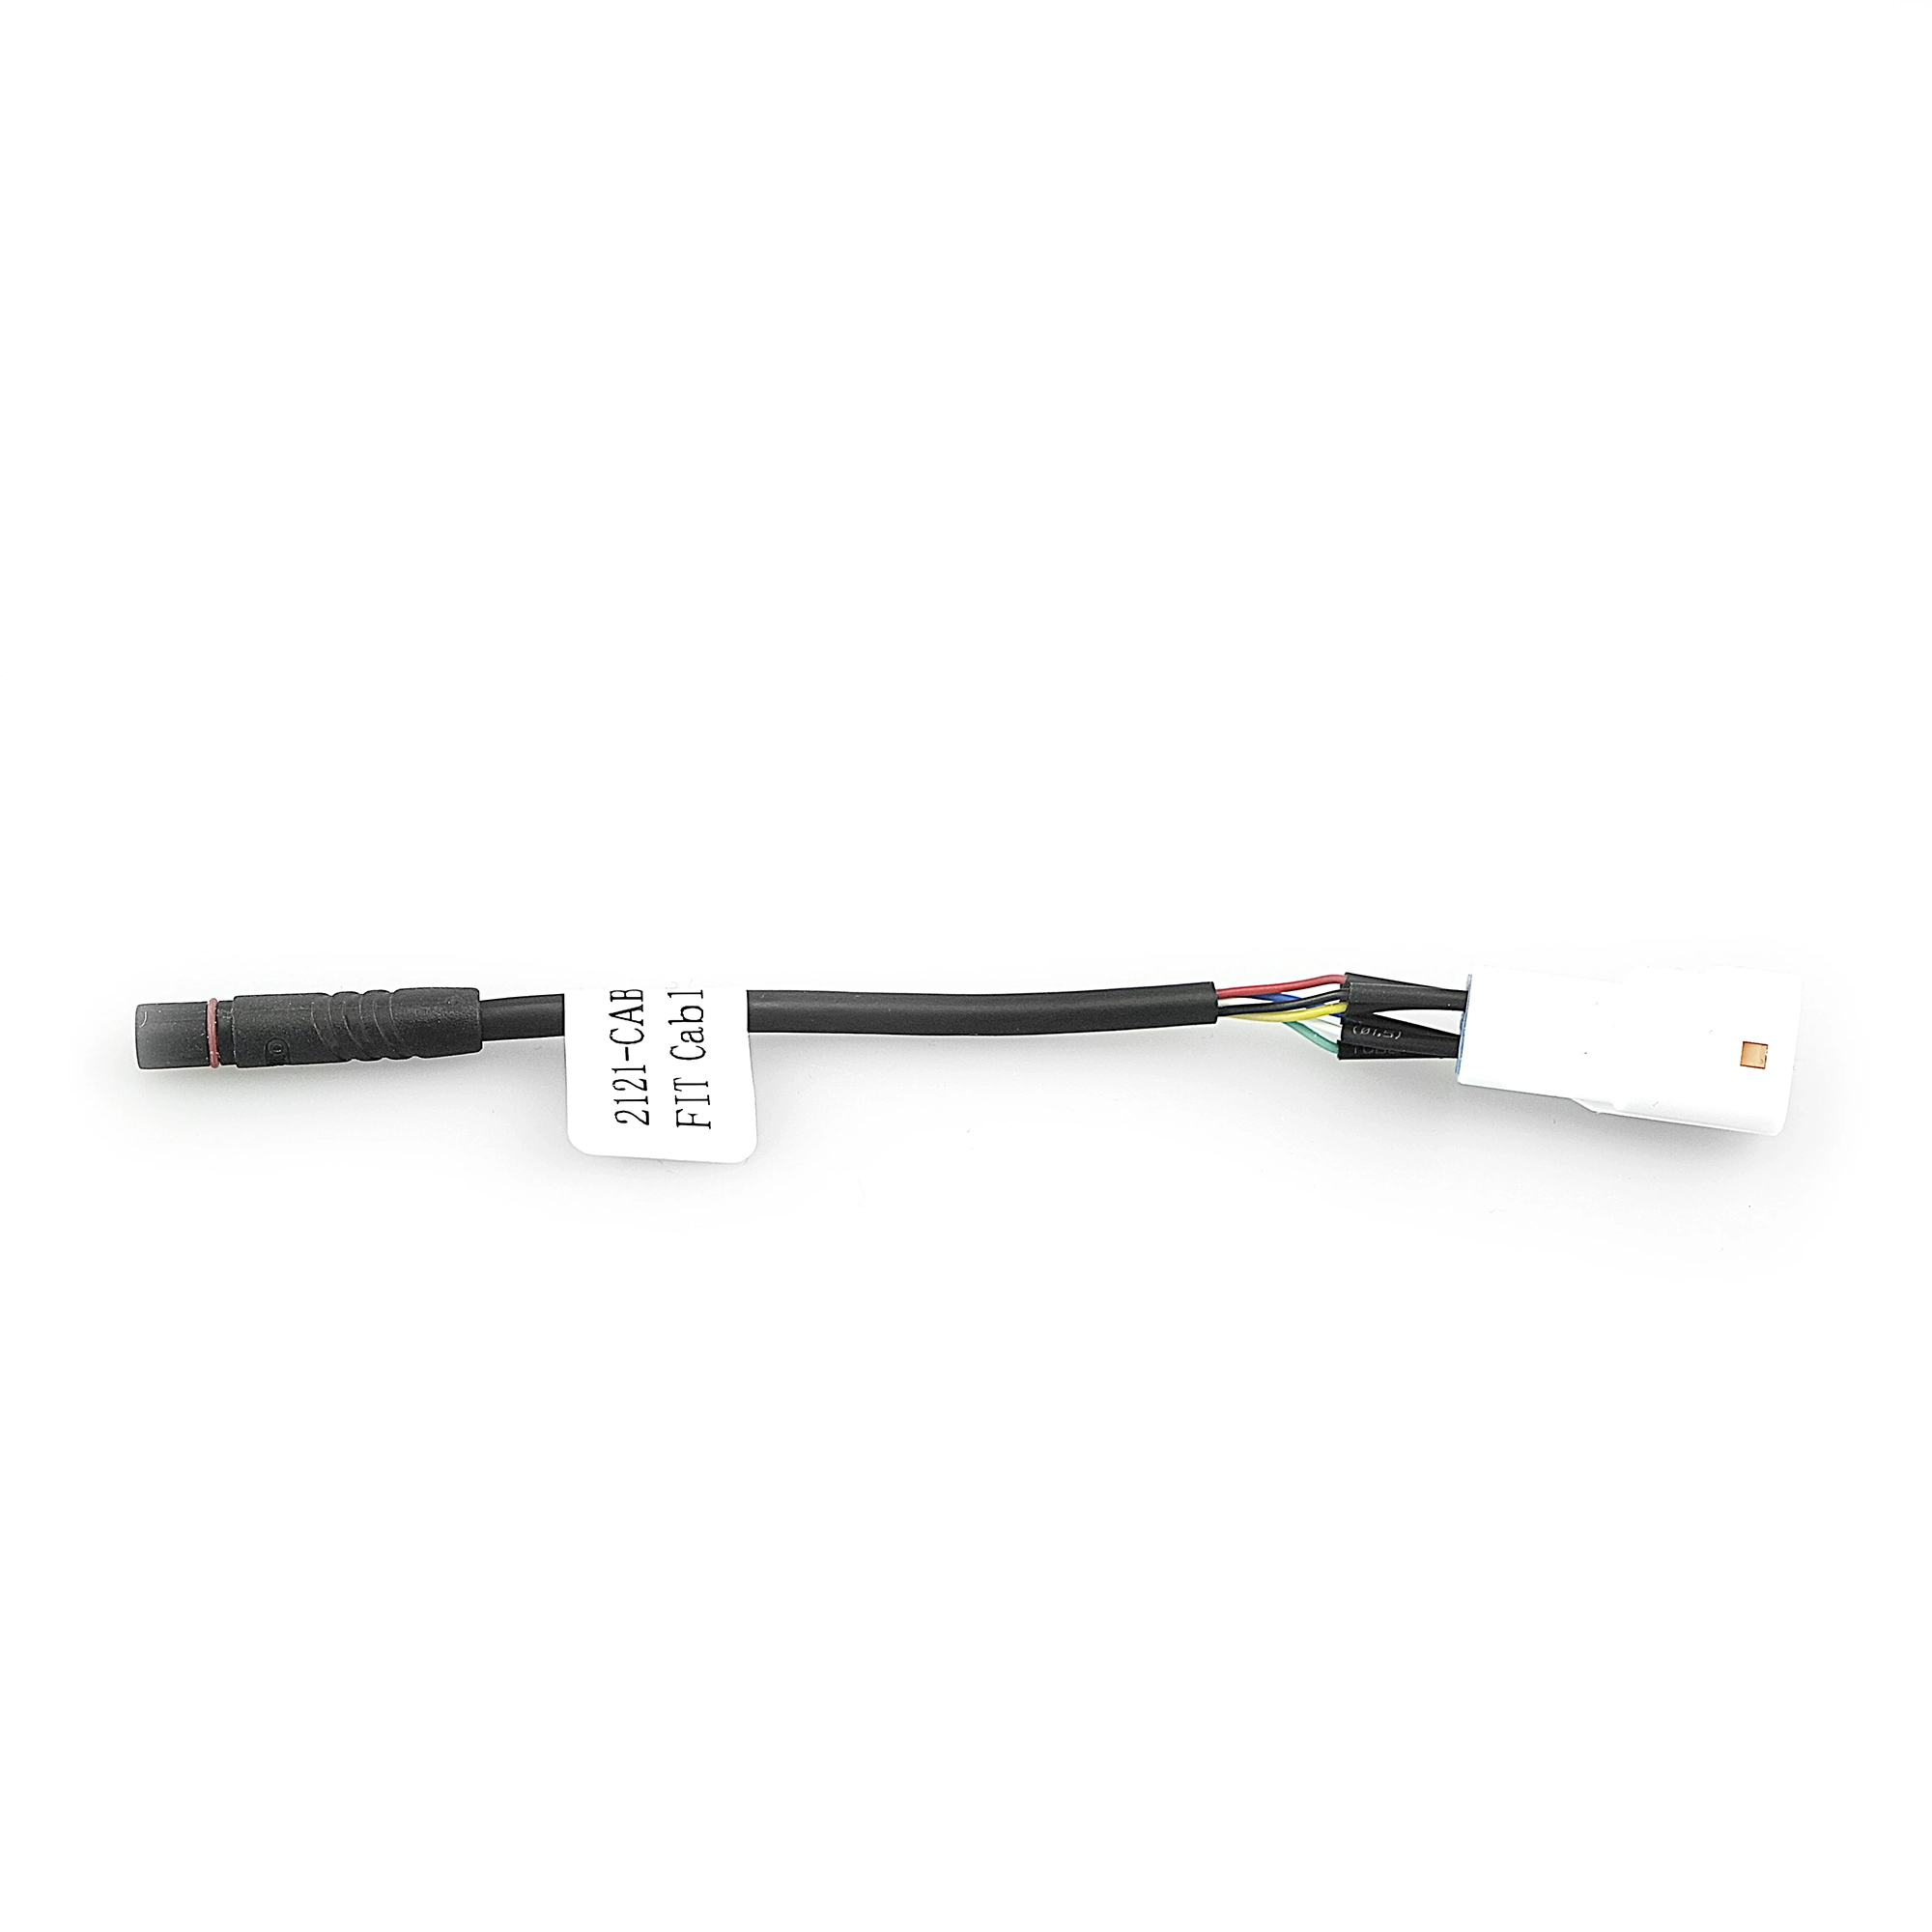 FIT câble adaptateur pour connecter des accessoires